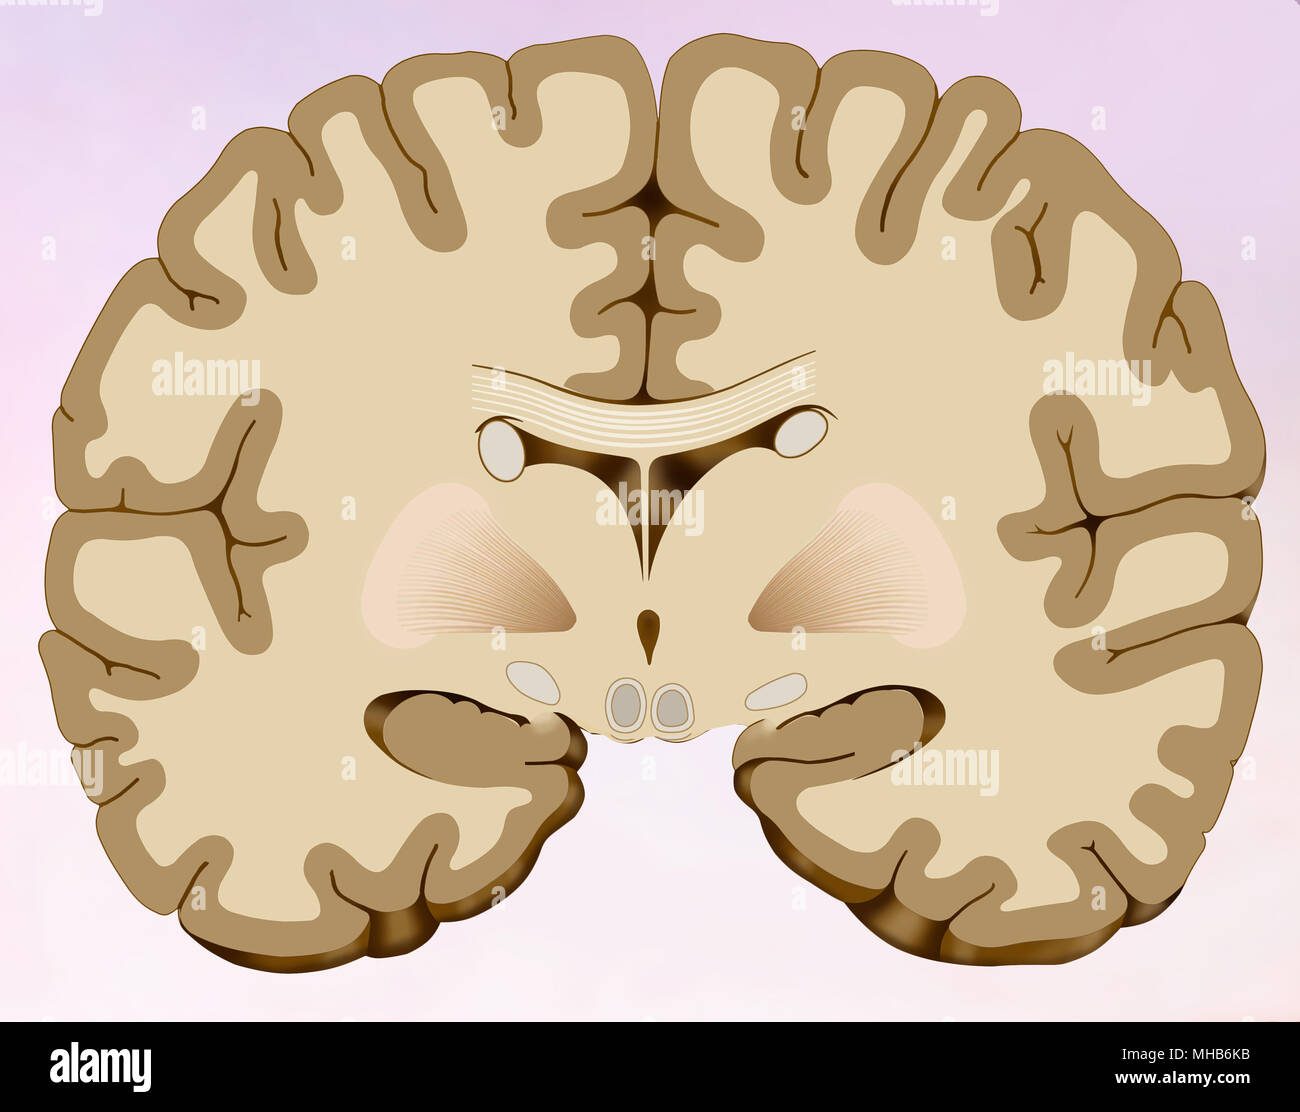 Koronalen Abschnitt des menschlichen Gehirns, in dem wir das Gehirn besteht aus zwei Hälften sehen können Stockfoto